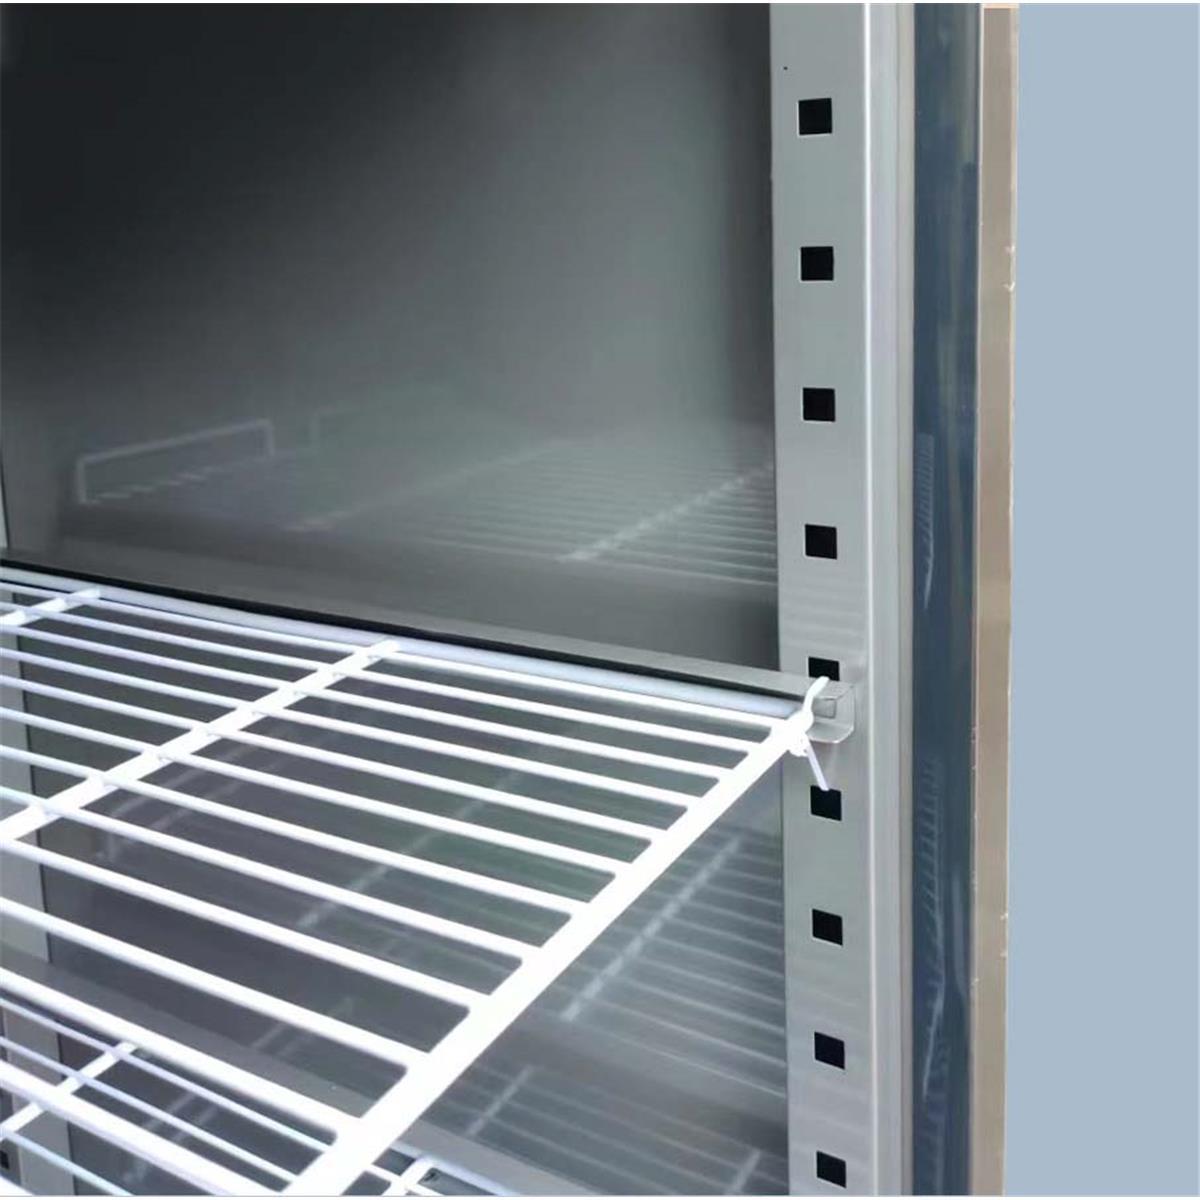 Edelstahlkühlschrank mit Glastür 1333 Liter GN2/1 Gastronics - CPGASTRO